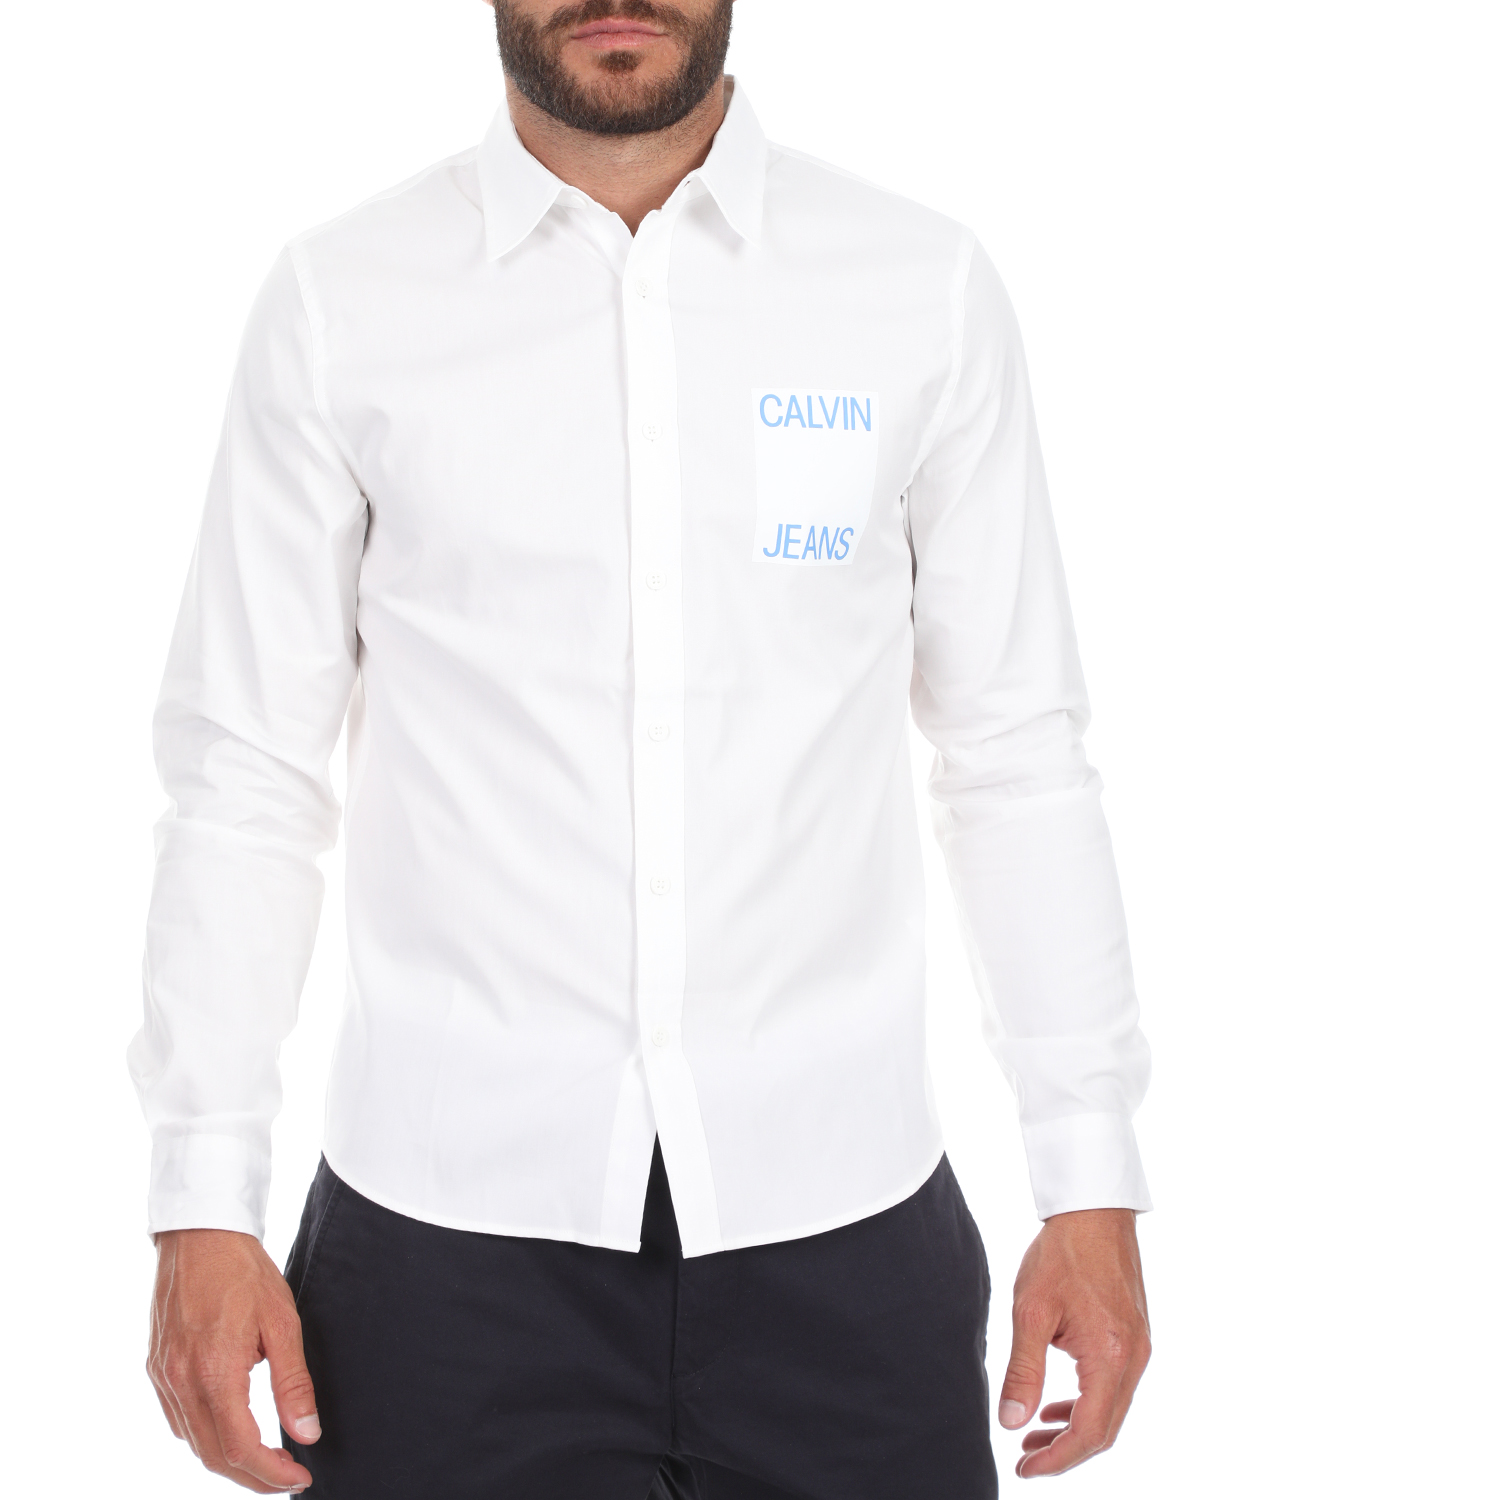 CALVIN KLEIN JEANS - Ανδρικό πουκάμισο CALVIN KLEIN JEANS λευκό